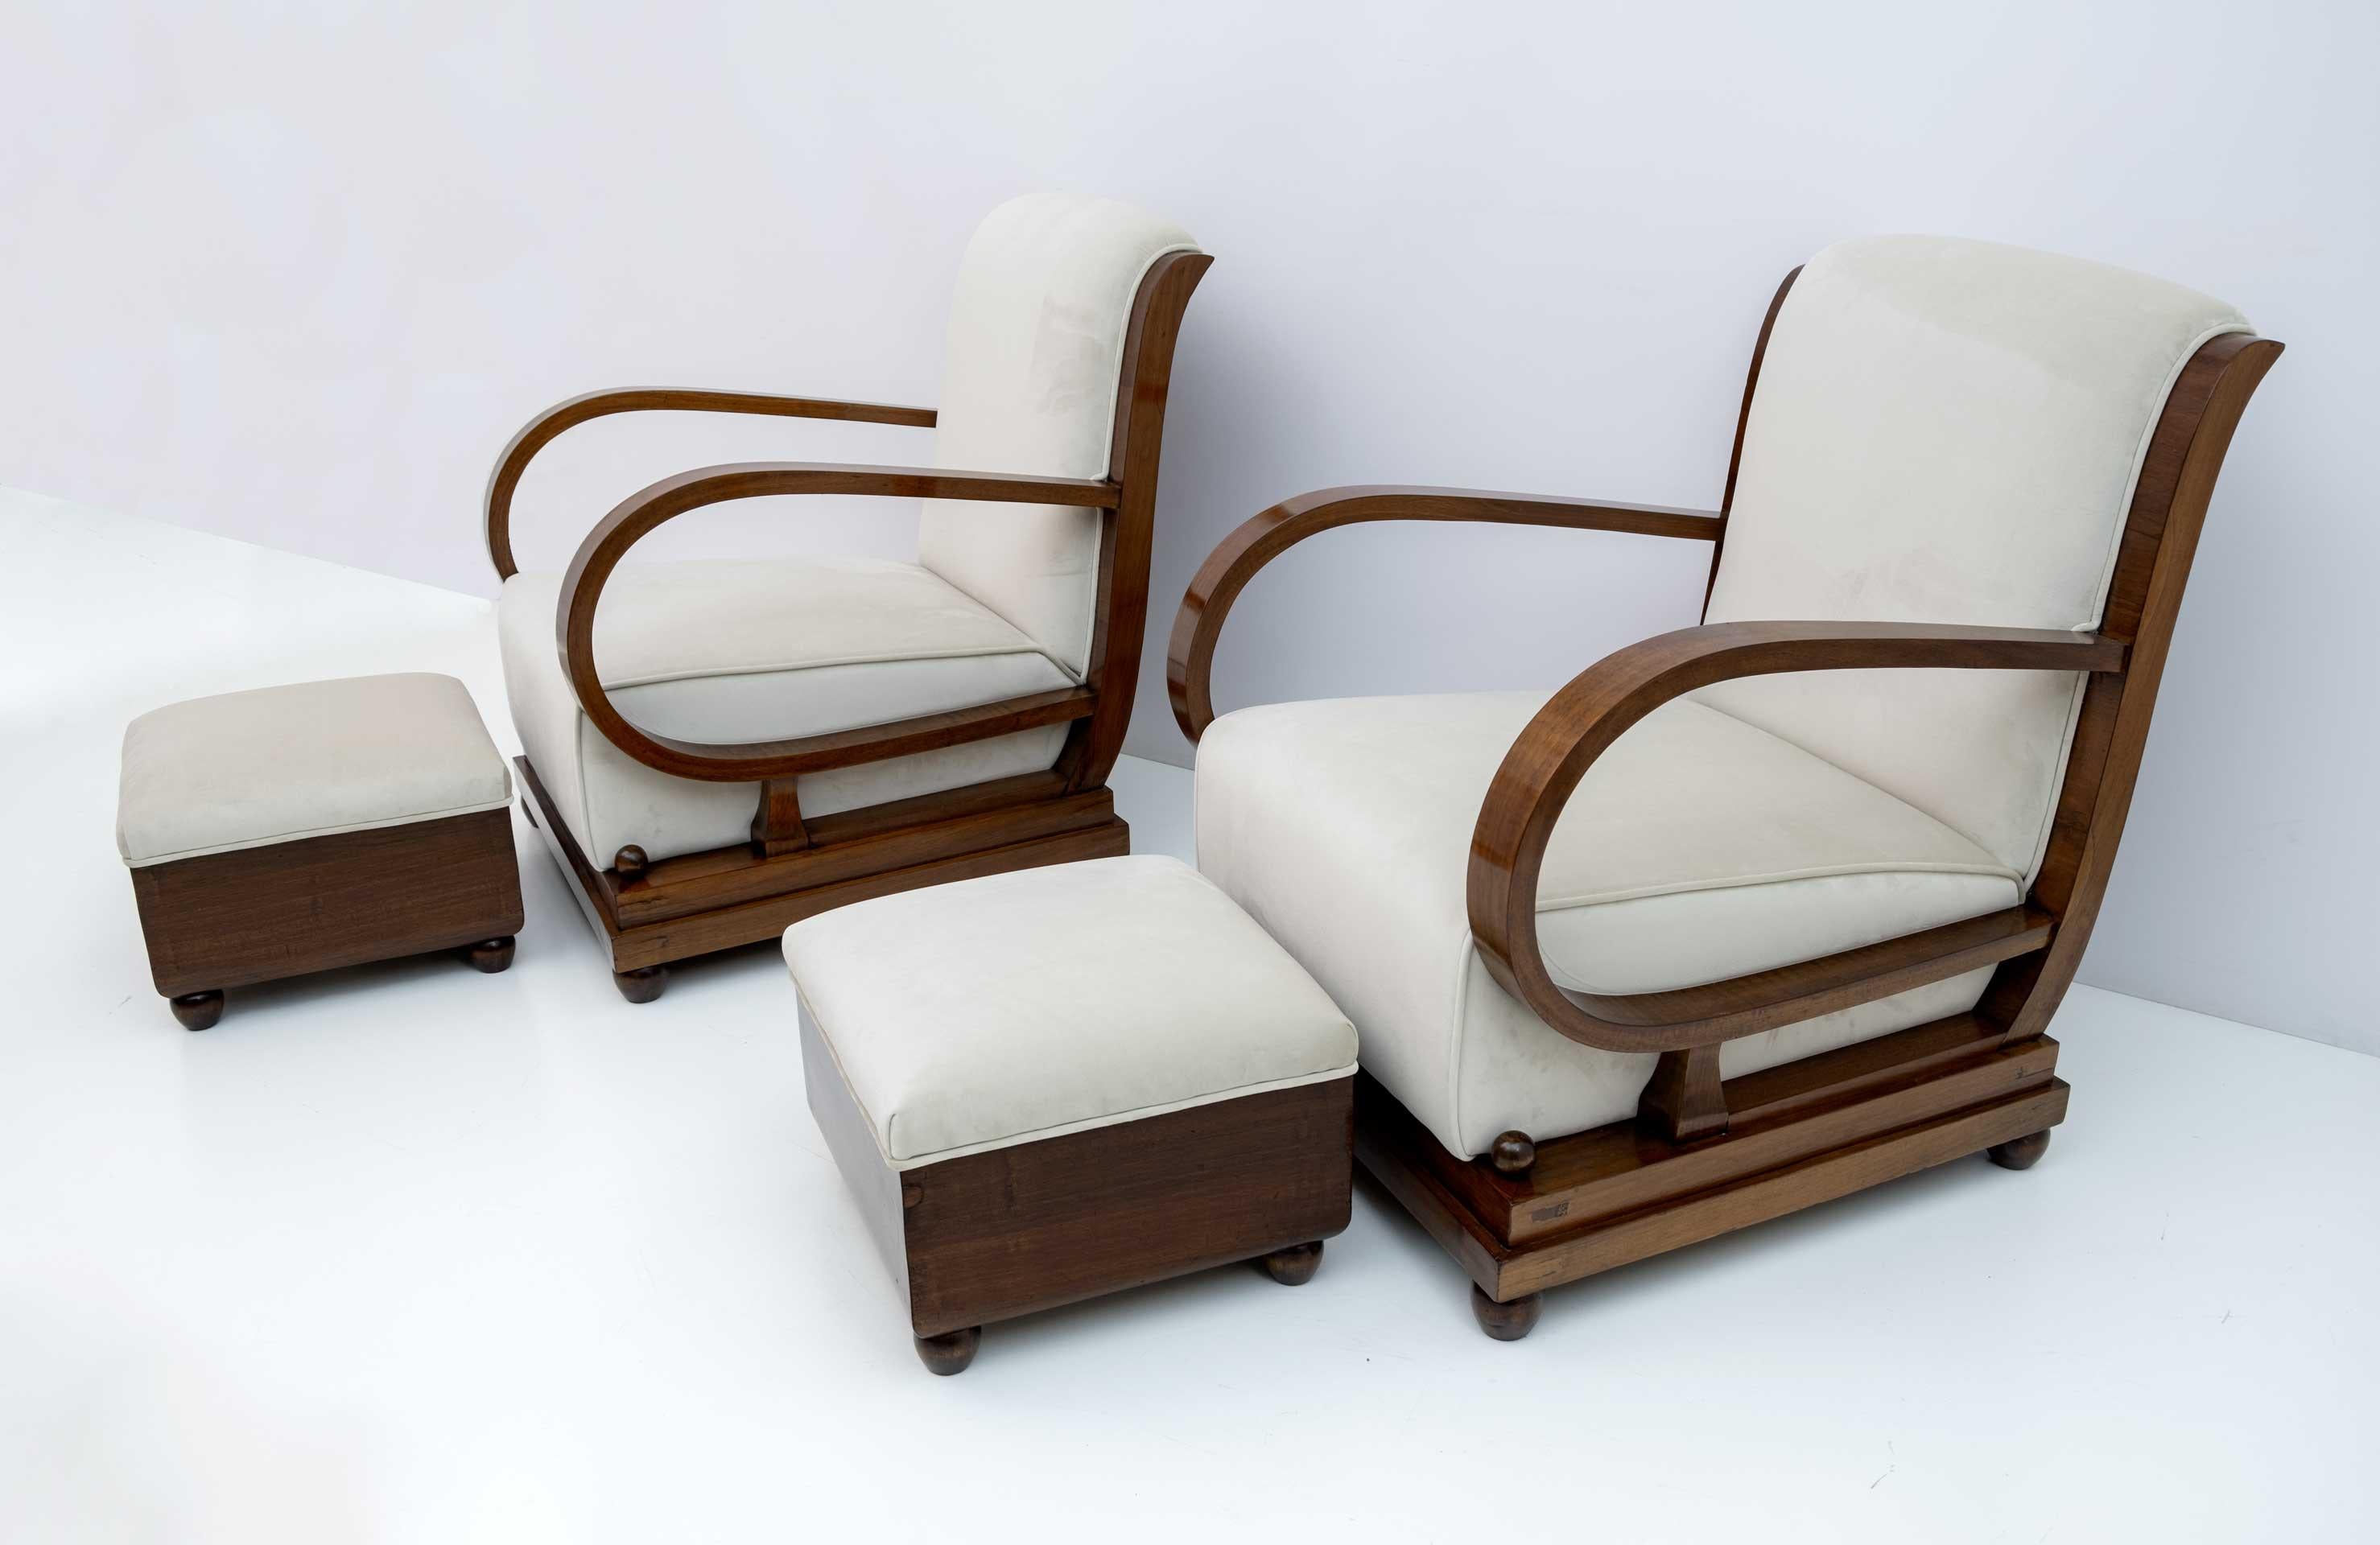 Ensemble italien des années 1920 composé d'une paire de fauteuils et de deux poufs. Le dossier du canapé et des fauteuils est gracieusement incurvé et se prolonge pour accentuer la courbure des accoudoirs inclinés. Récemment retapissé et restauré